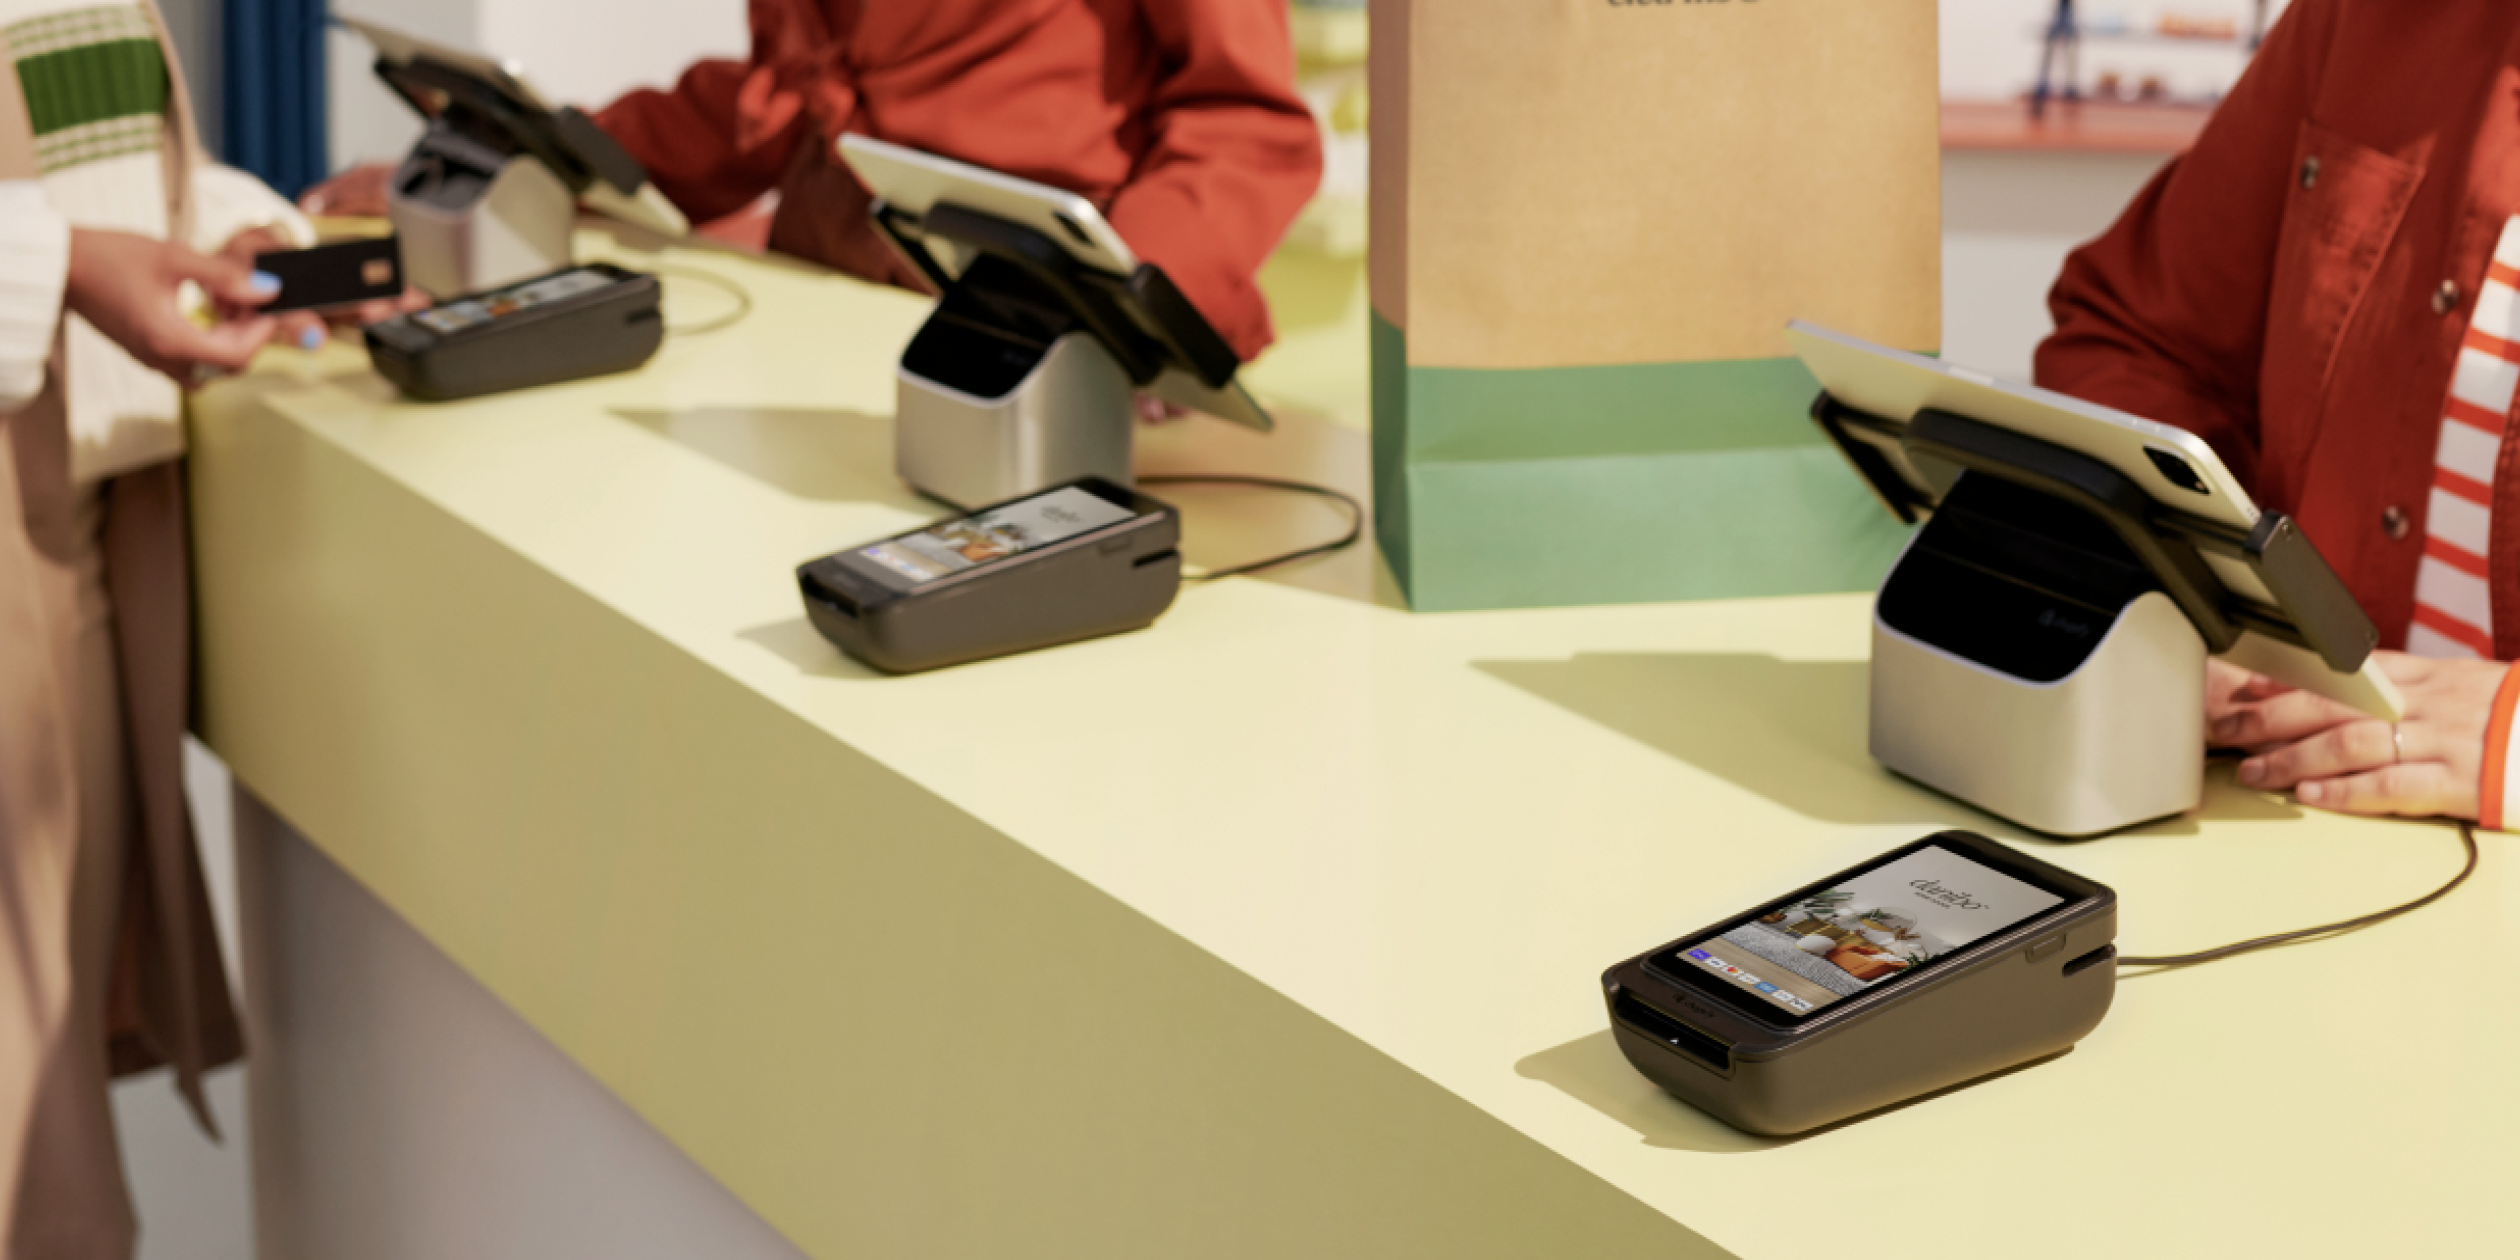 Le matériel PDV de la collection Retail de Shopify est présenté sur le comptoir d’une boutique. Il comprend un POS Terminal et un support pour tablette. La tablette est vendue séparément.